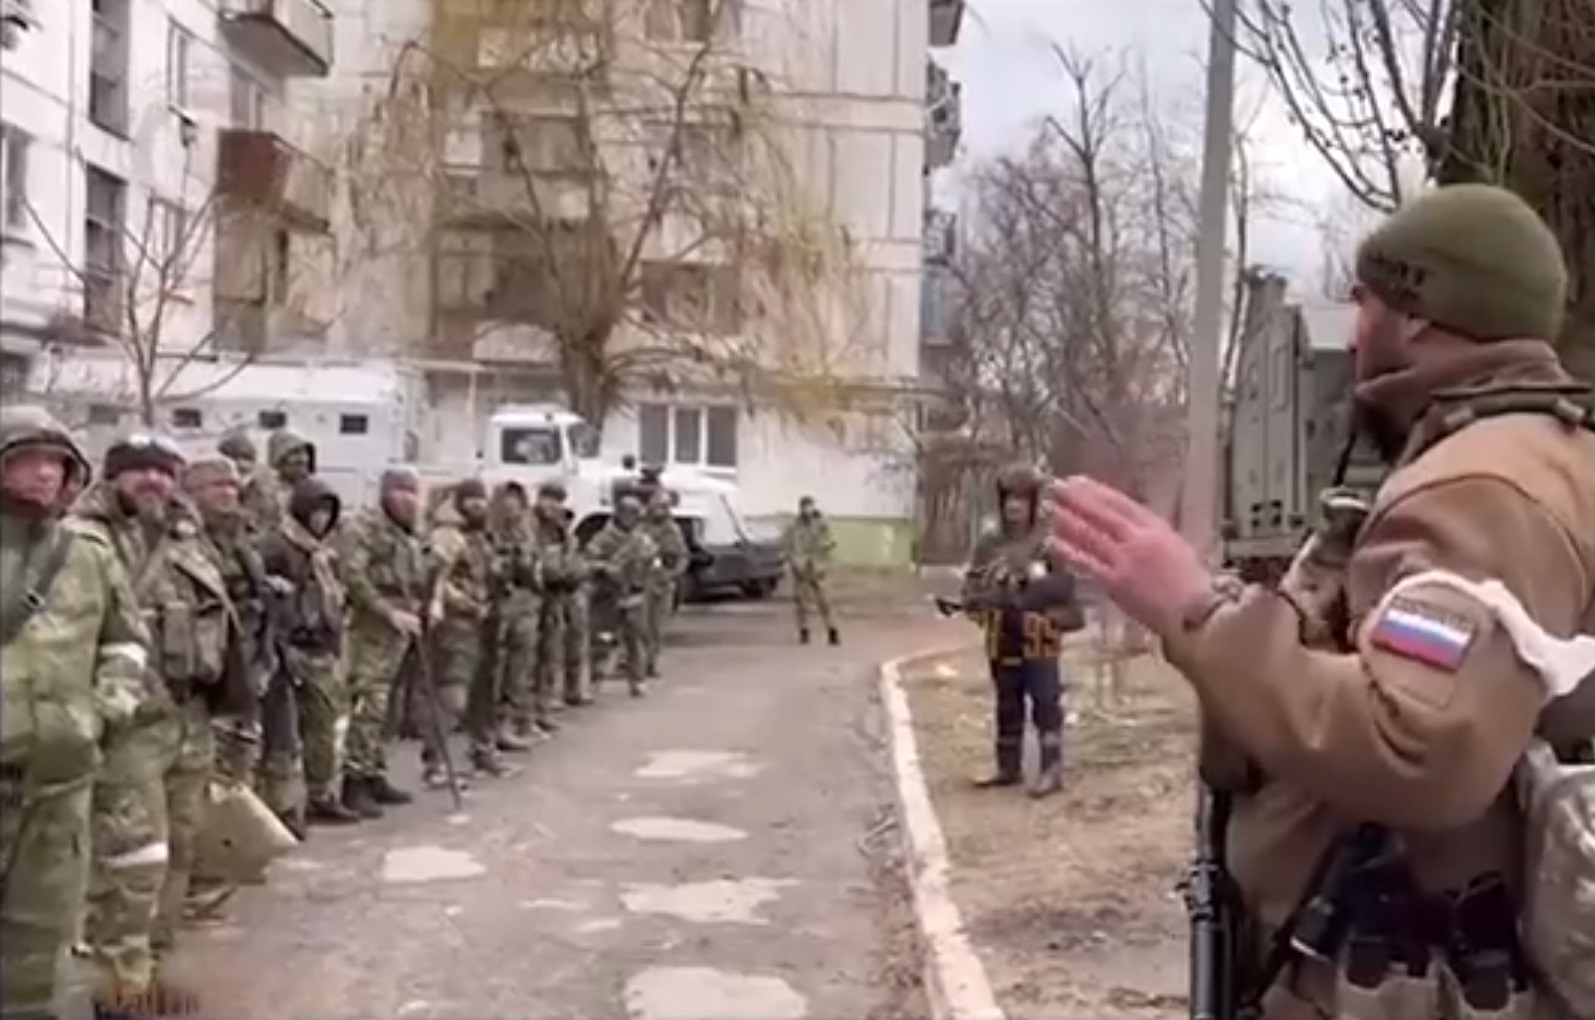 RUSKI KOMANDANT IZDAO JEZIVU NAREDBU: "POBIJ IH SVE"! Ukrajinci objavili SNIMAK! Vojnik odgovara: "Nemamo podršku